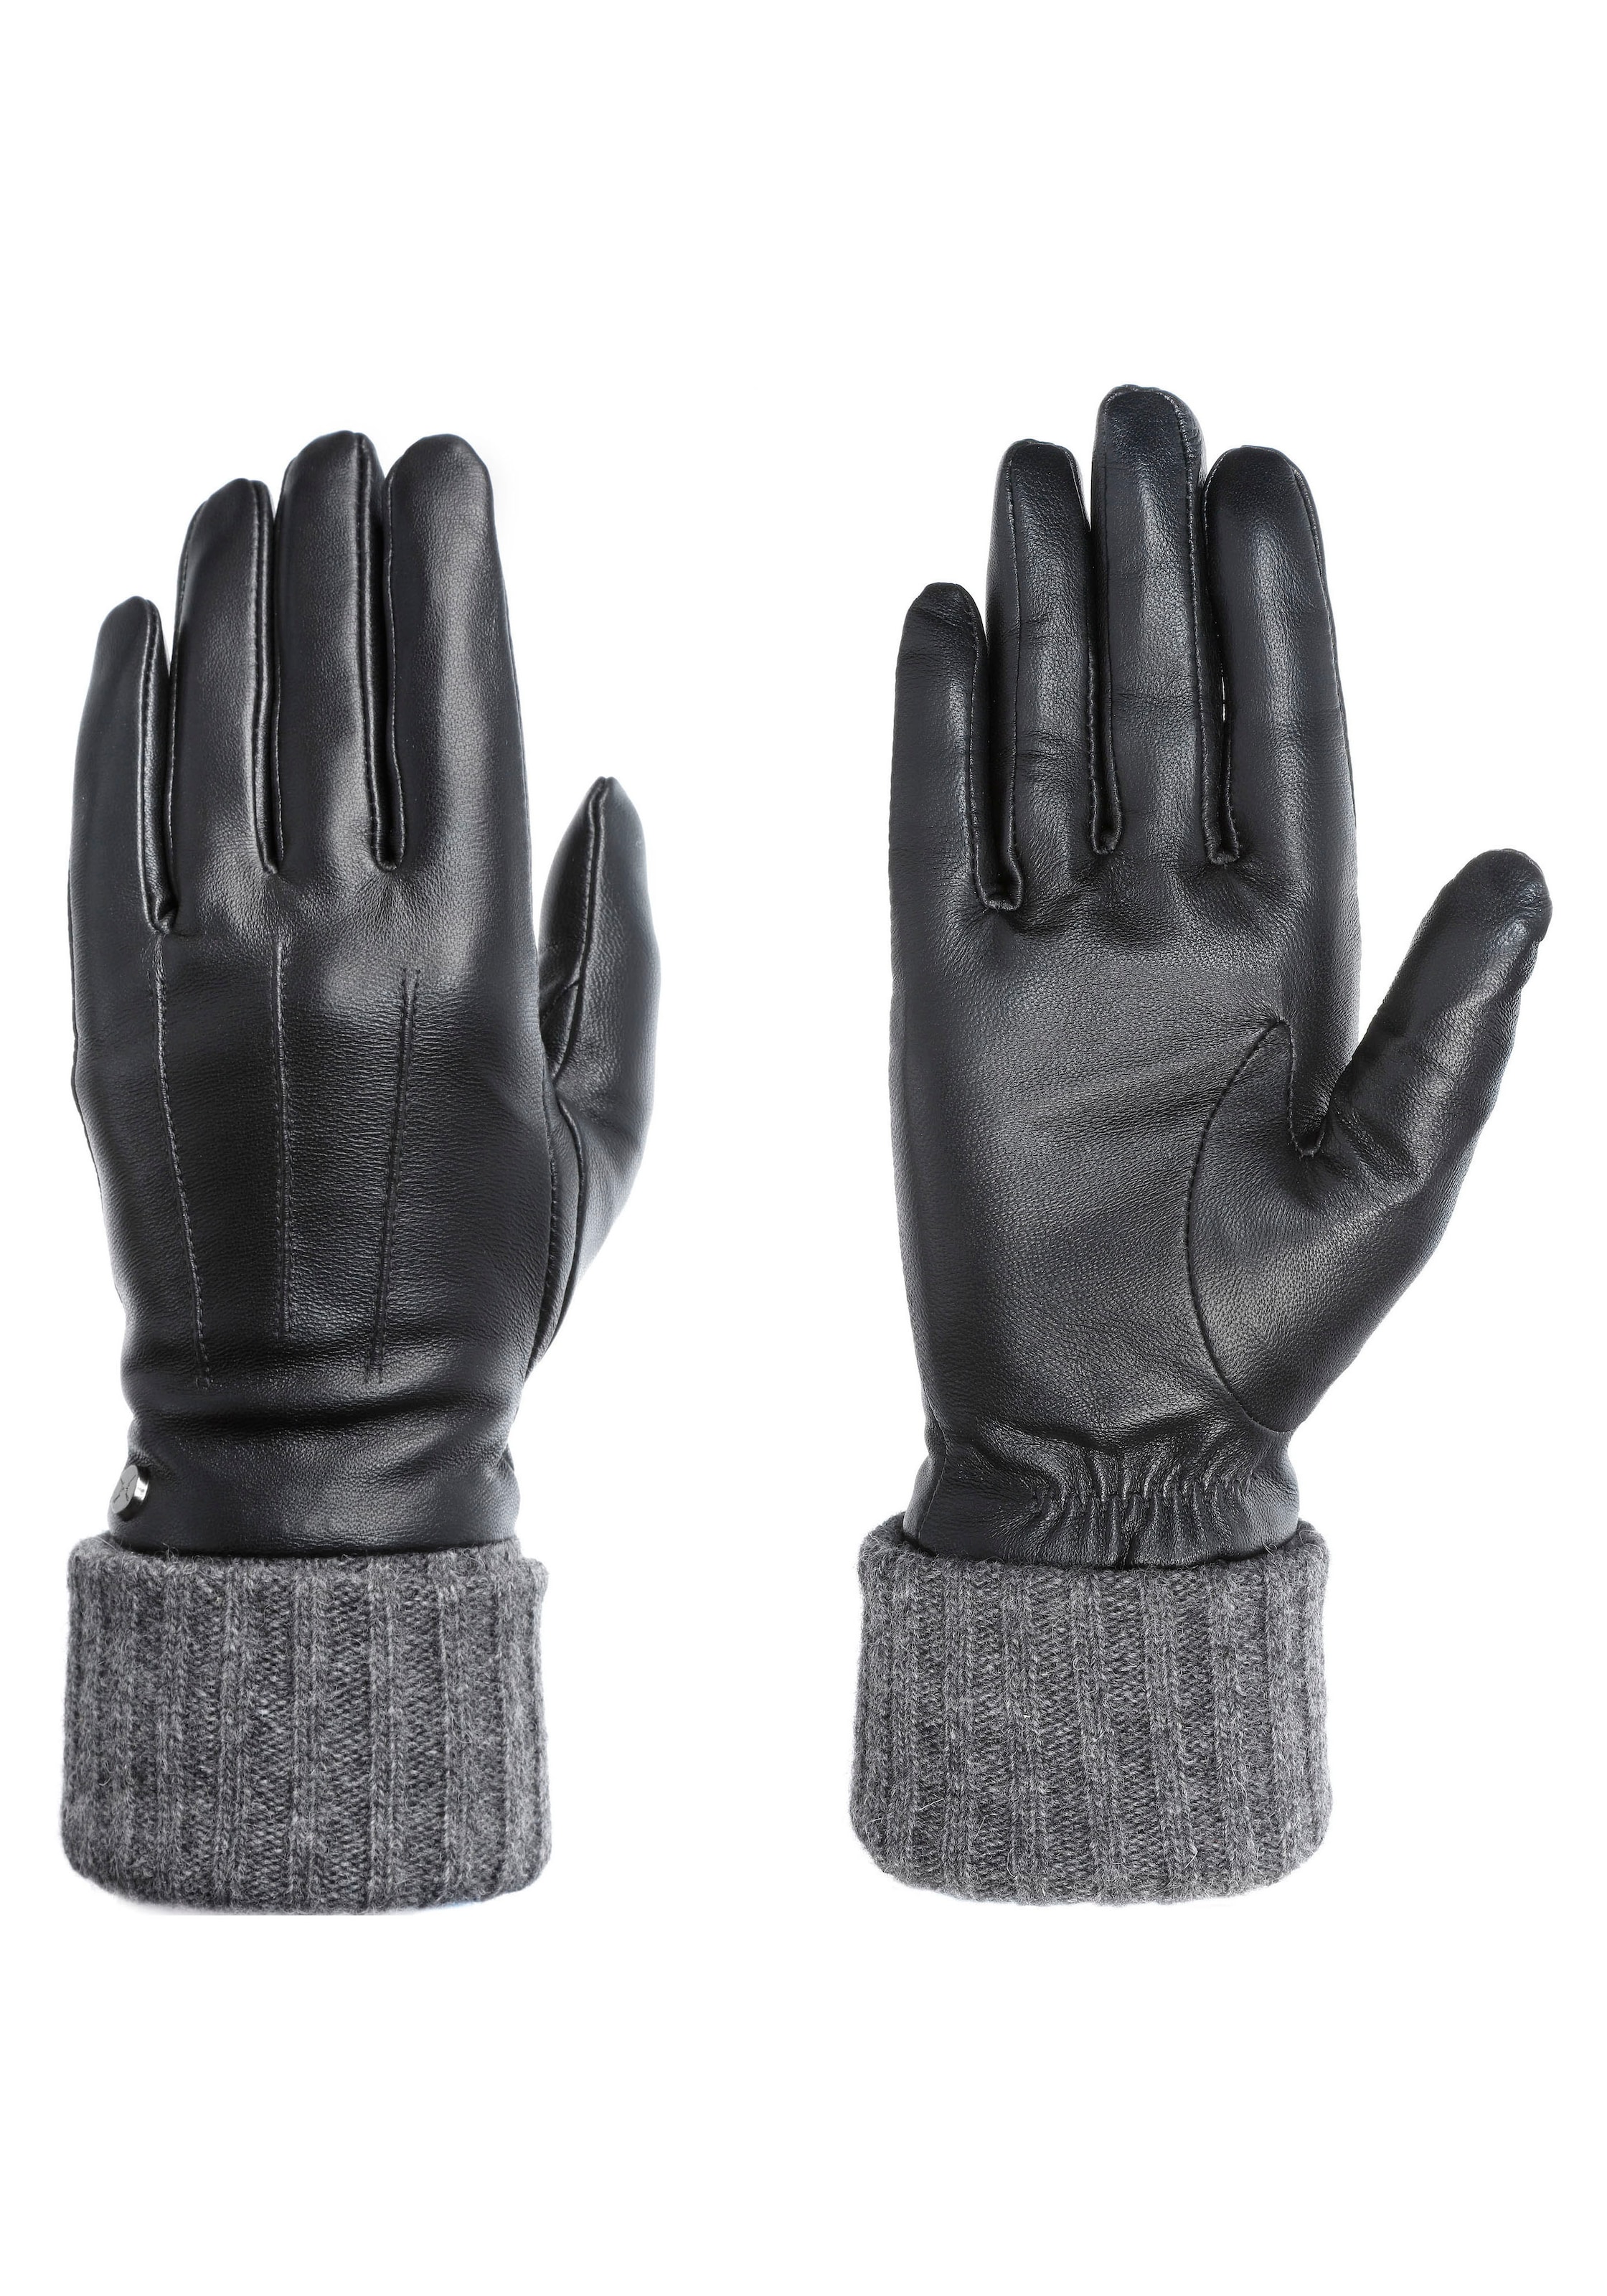 Damen Handschuhe SALE & Outlet ▷ günstige BAUR Angebote 